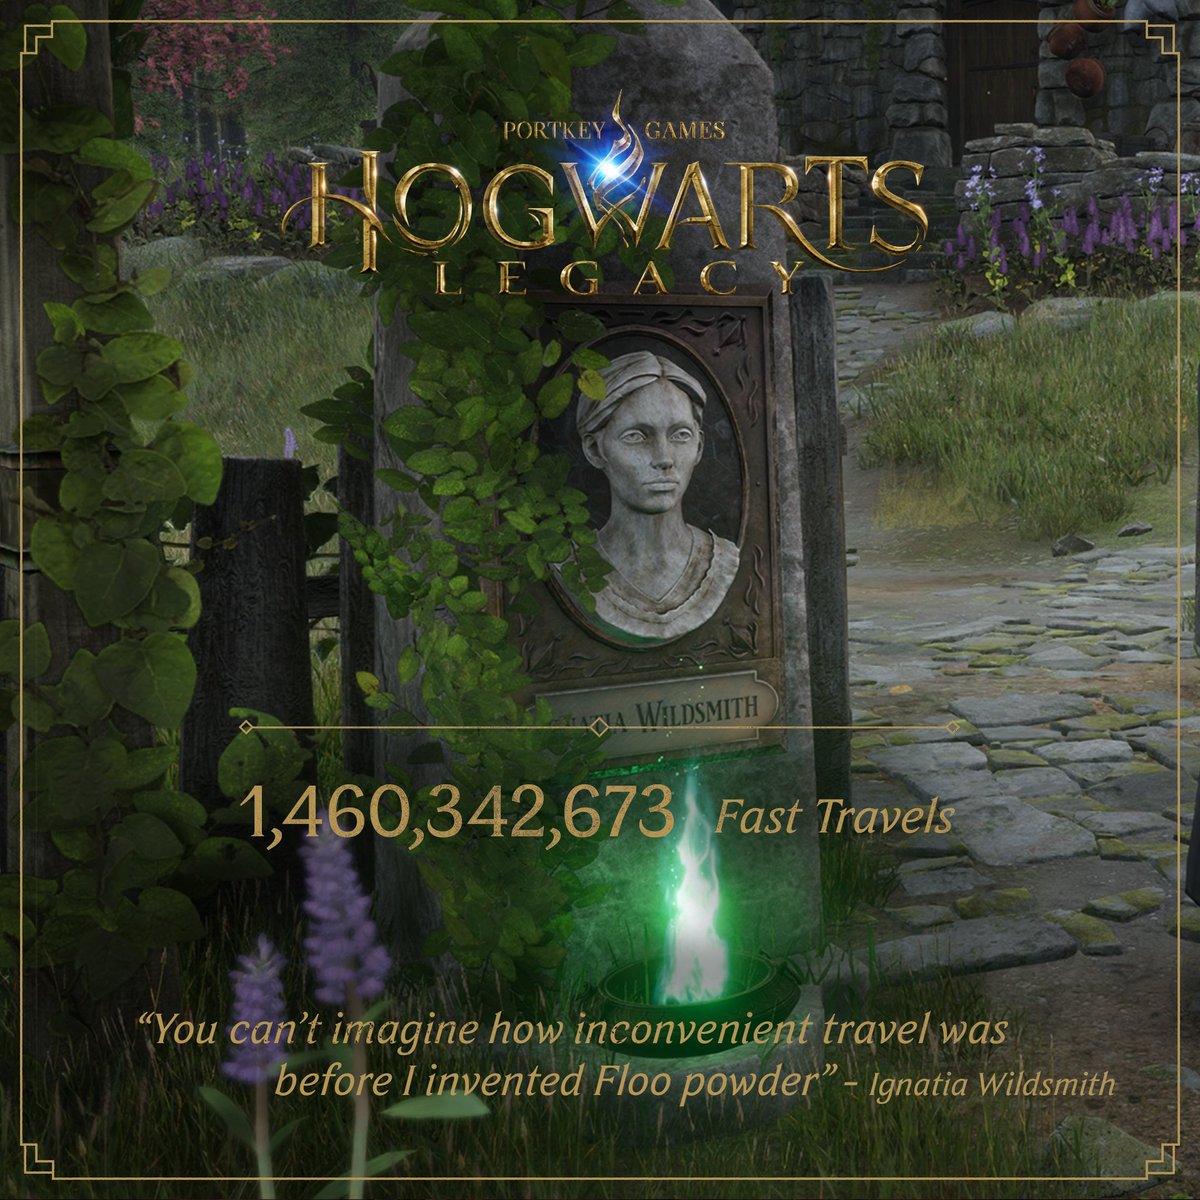 [情報] 霍格華茲遺產 至今打倒22億5000萬黑巫師